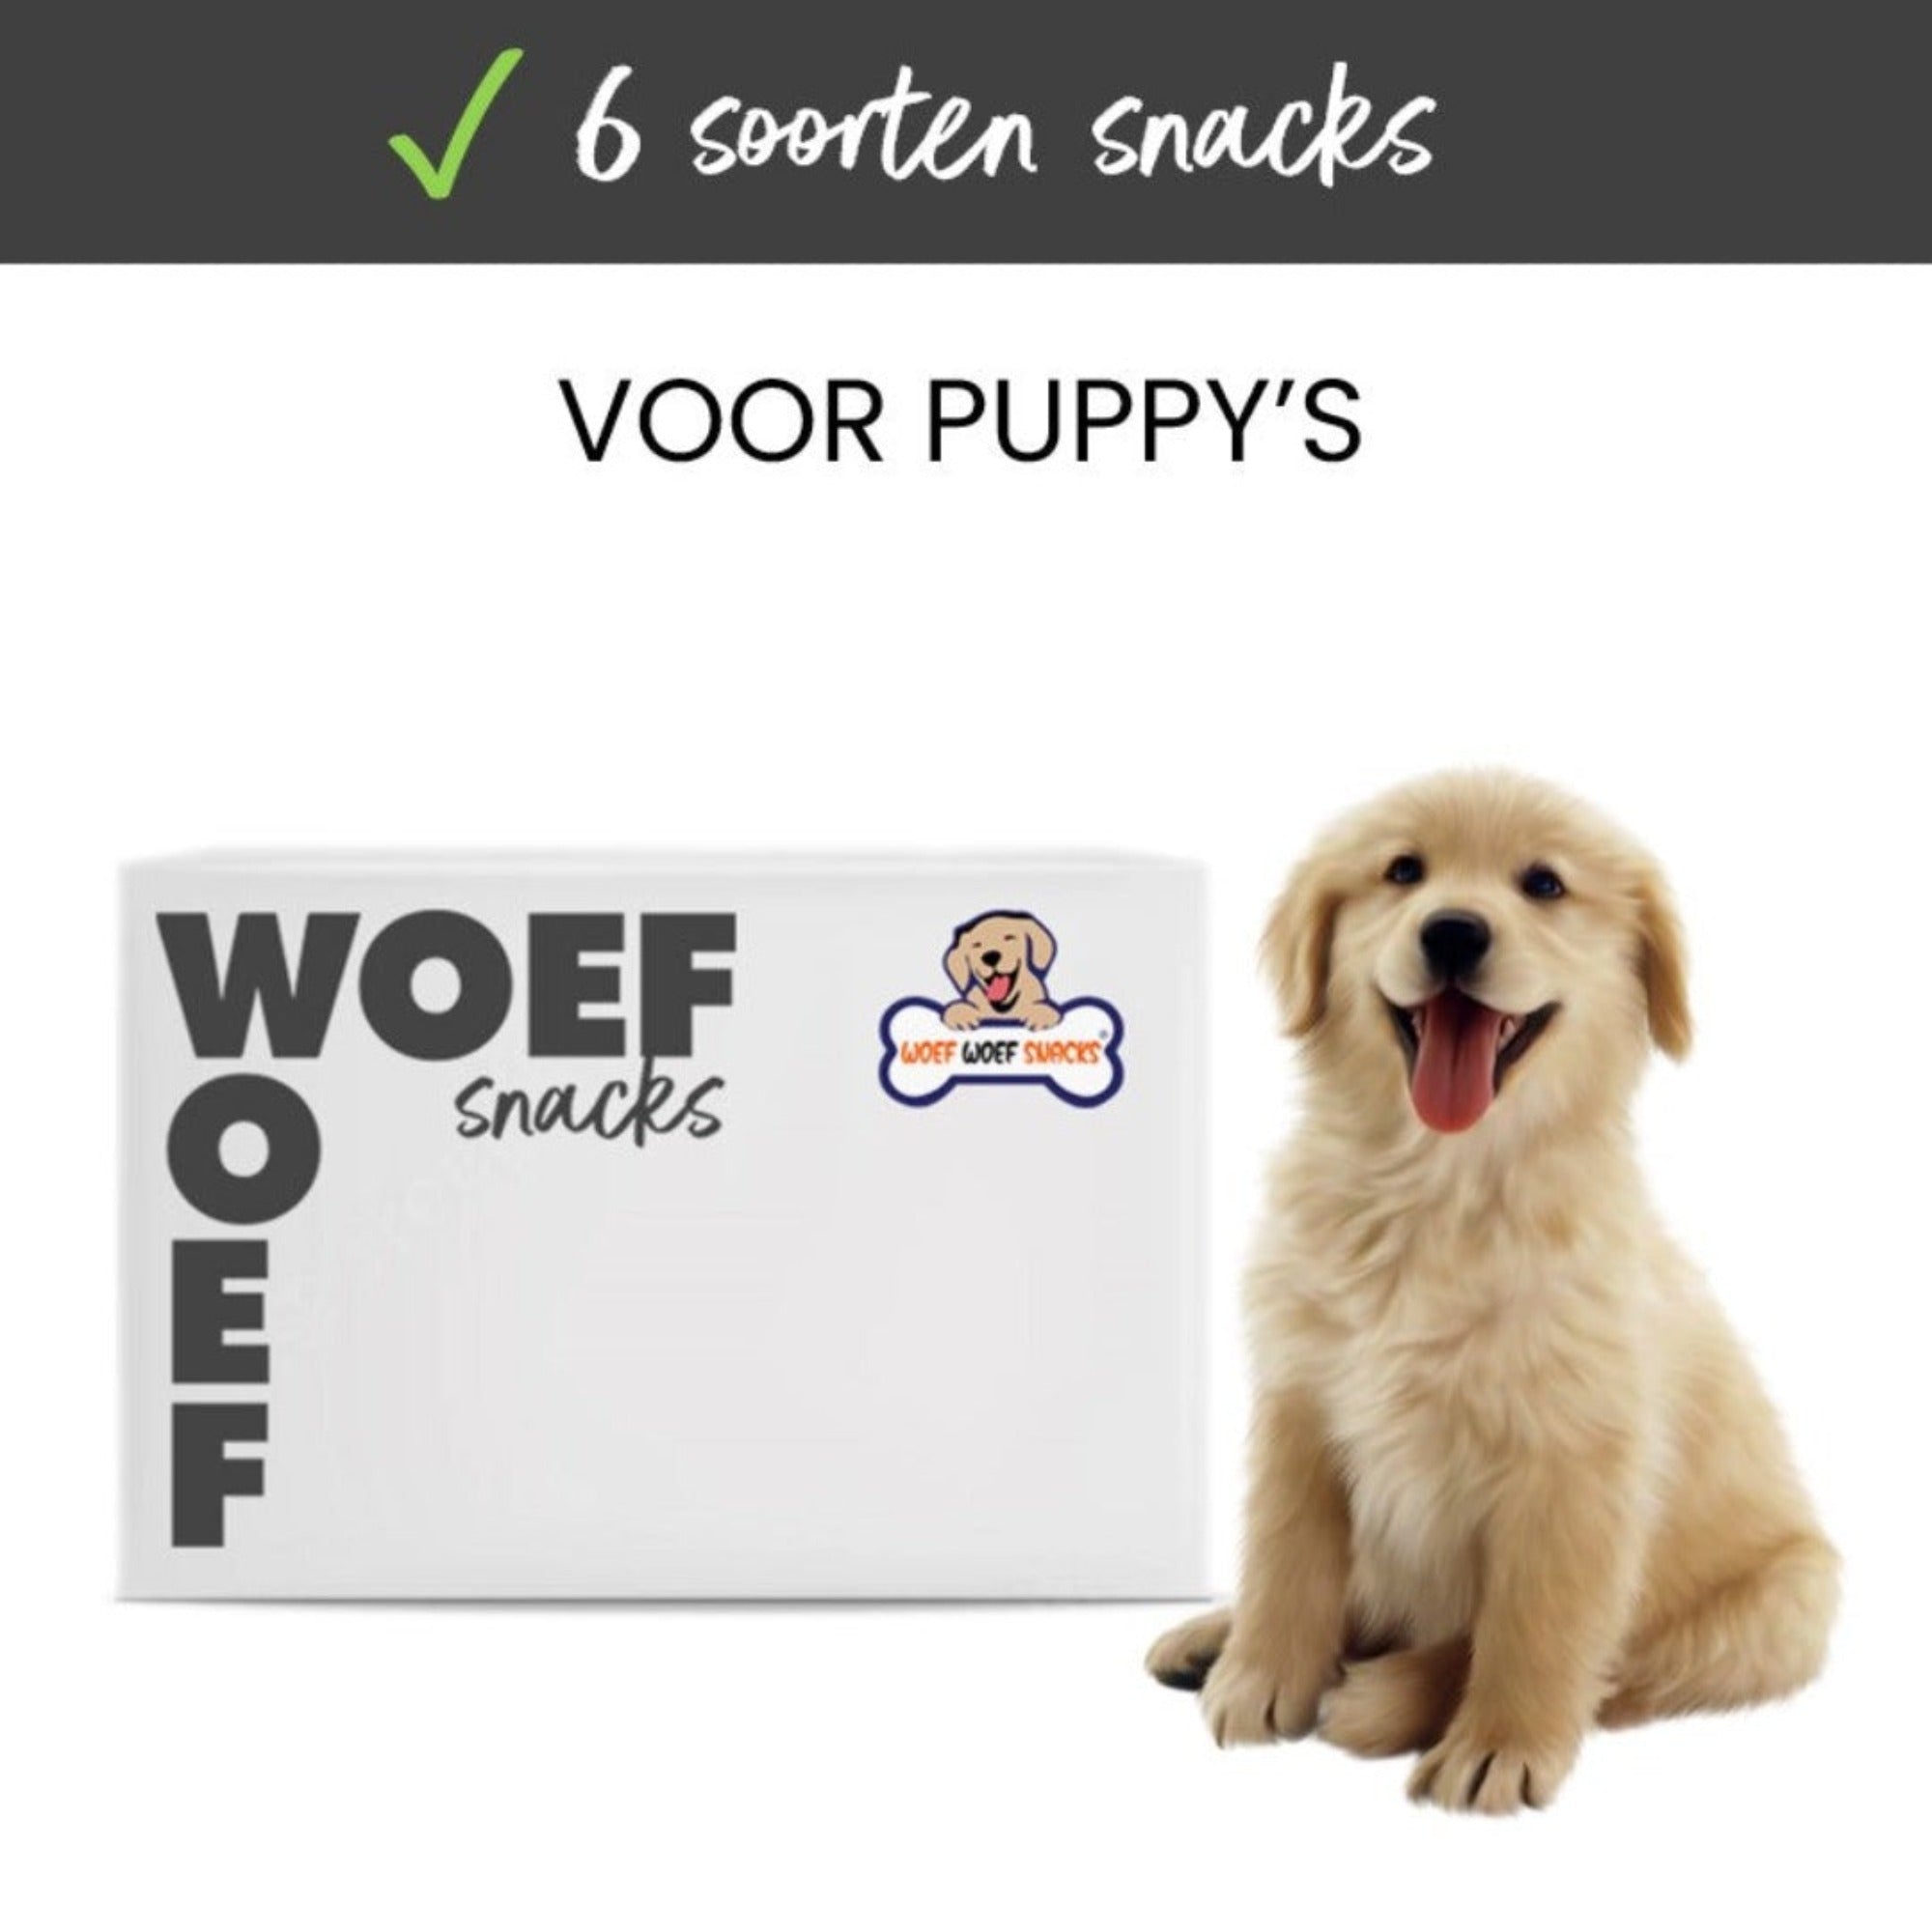 Puppy snack box. De doos van het merk Woef Woef Snacks is te zien. Daarnaast zit een blije golden retriever puppy. Verder staat er dat de doos 6 soorten snacks bevat. 